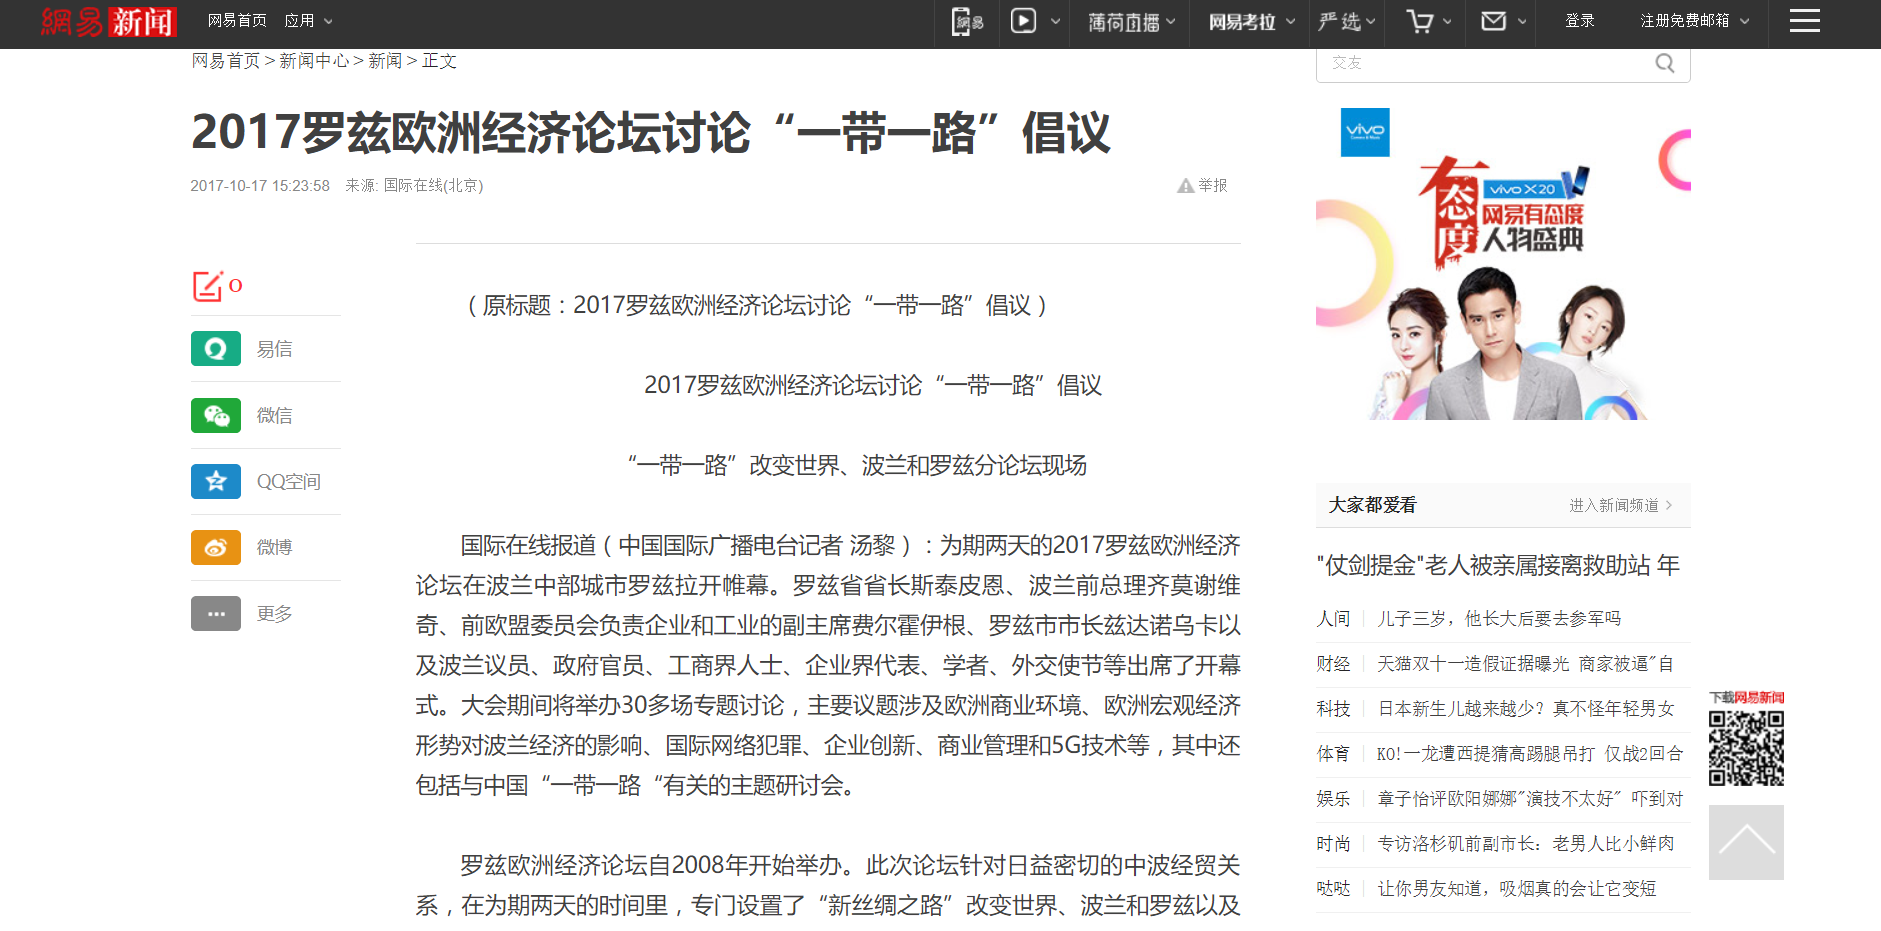 Zrzut ekranu chińskiej strony internetowej/Screenshot of the Chinese website